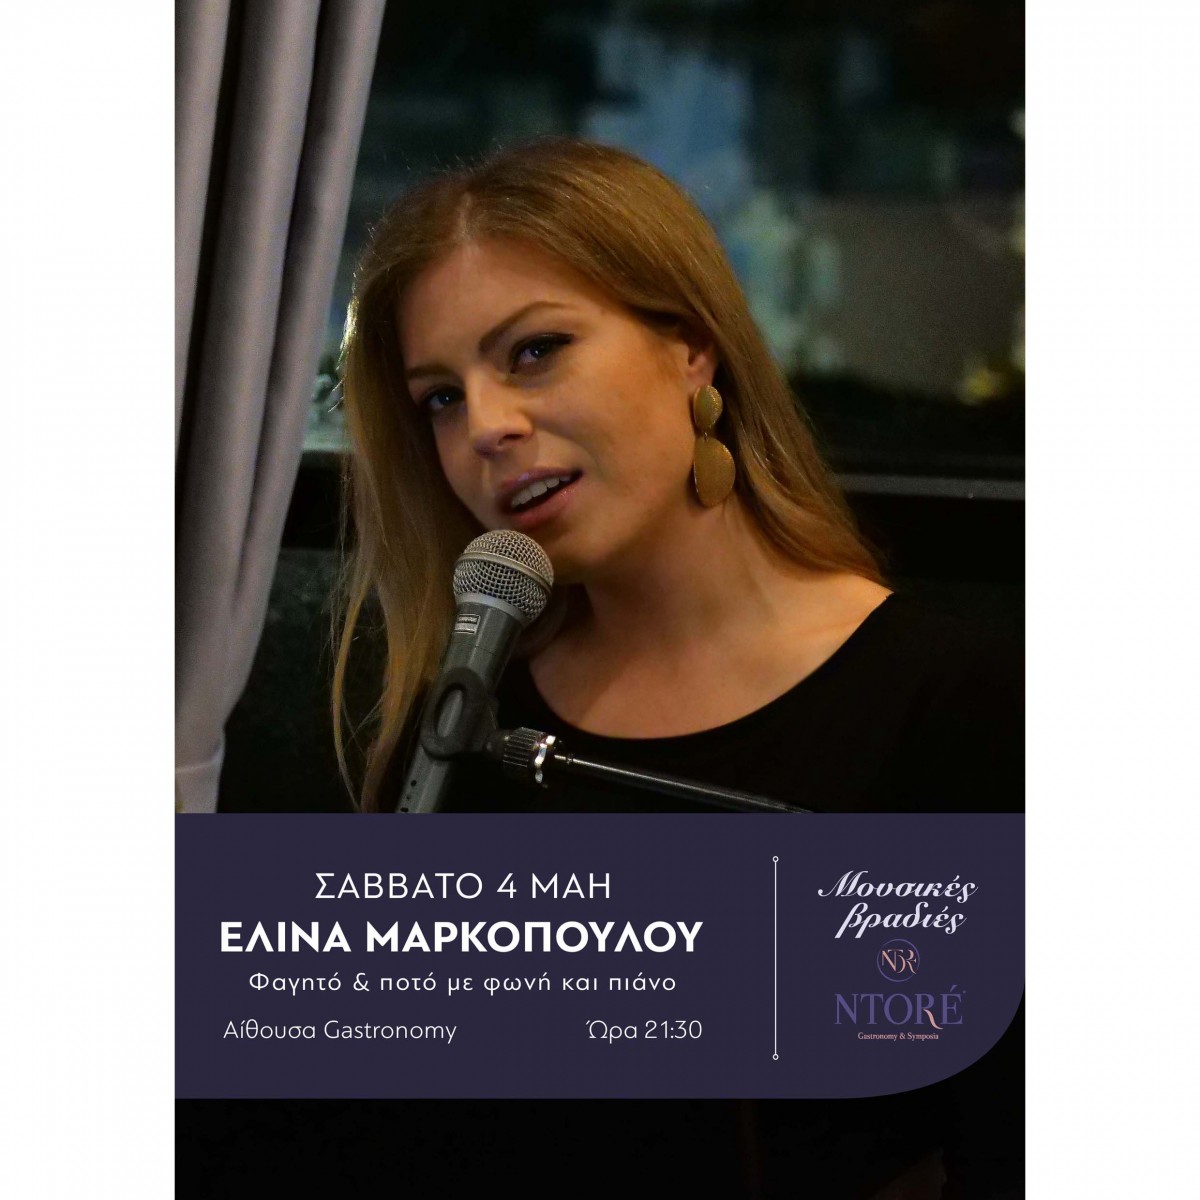 Φαγητό και ποτό με την Ελίνα Μαρκοπούλου στη φωνή και το πιάνο και την καλύτερη θέα της πόλης! Σάββατο 4 Μάη, 21:30